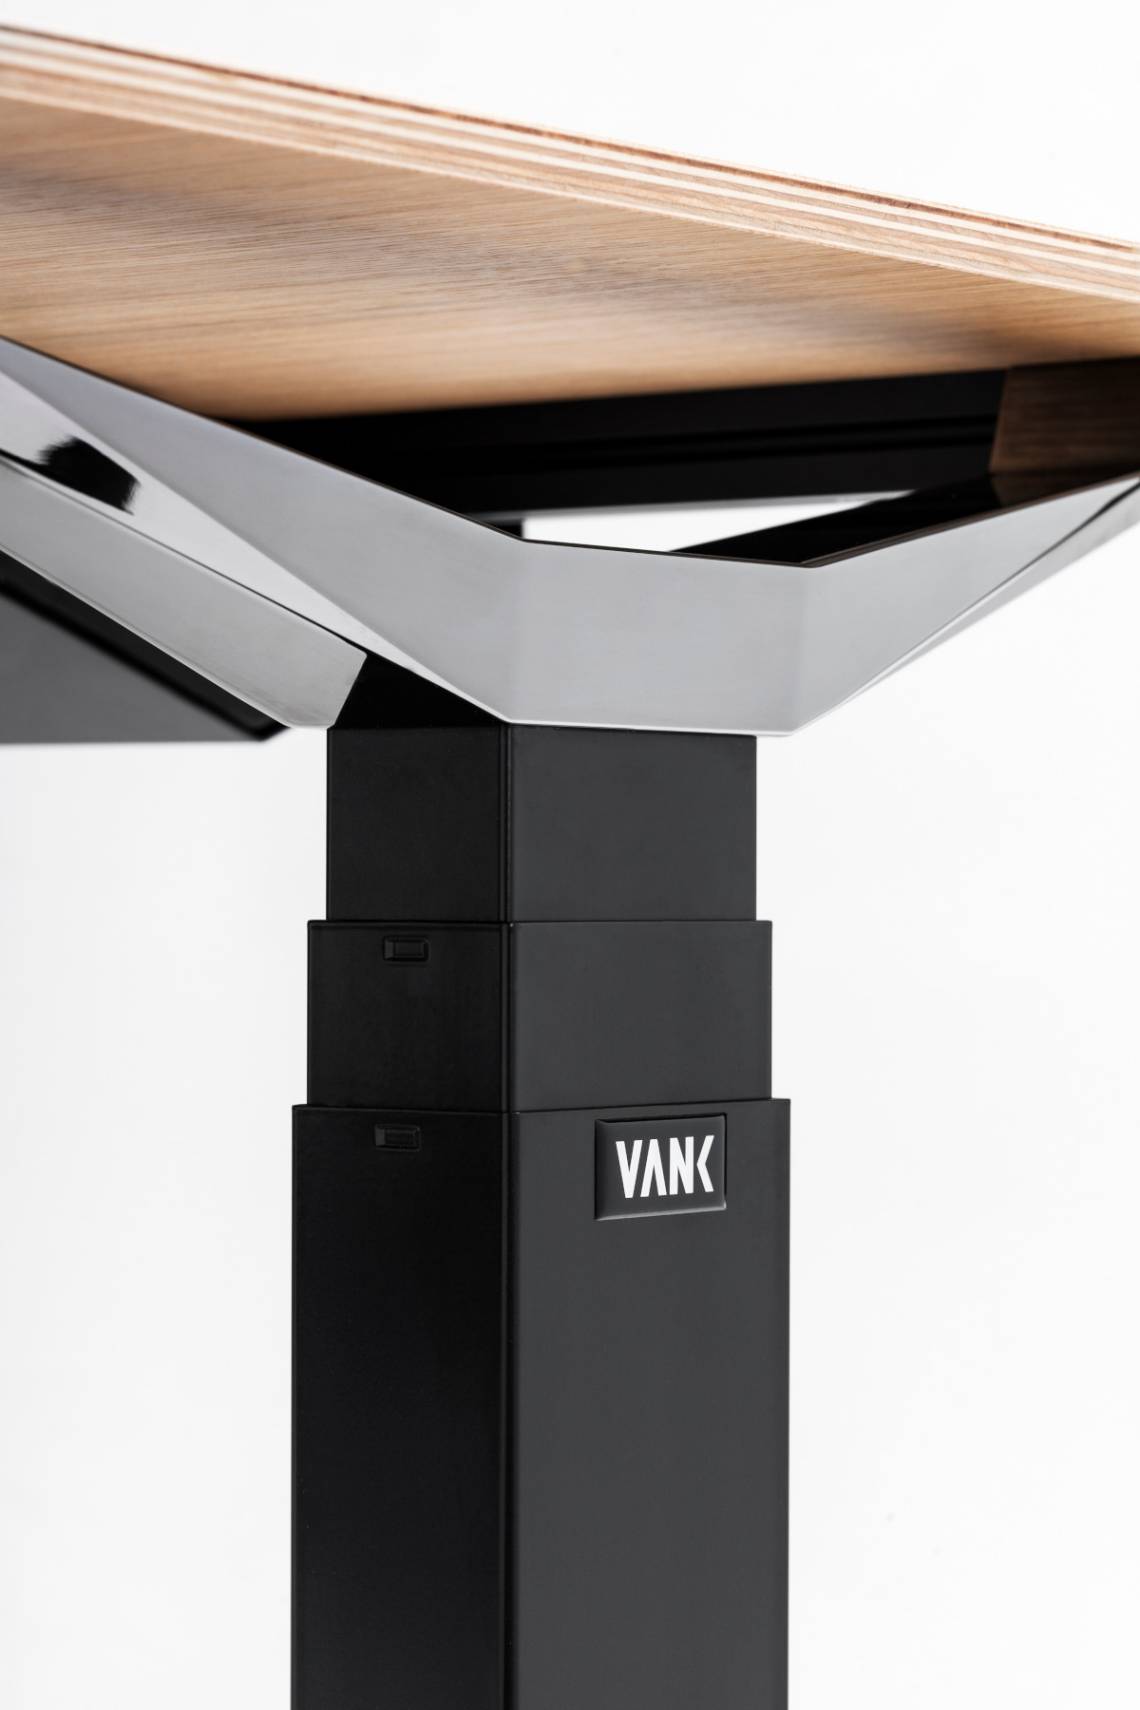 VANK Move Höhenverstellbarer Schreibtisch Detailbild Büroeinrichtun